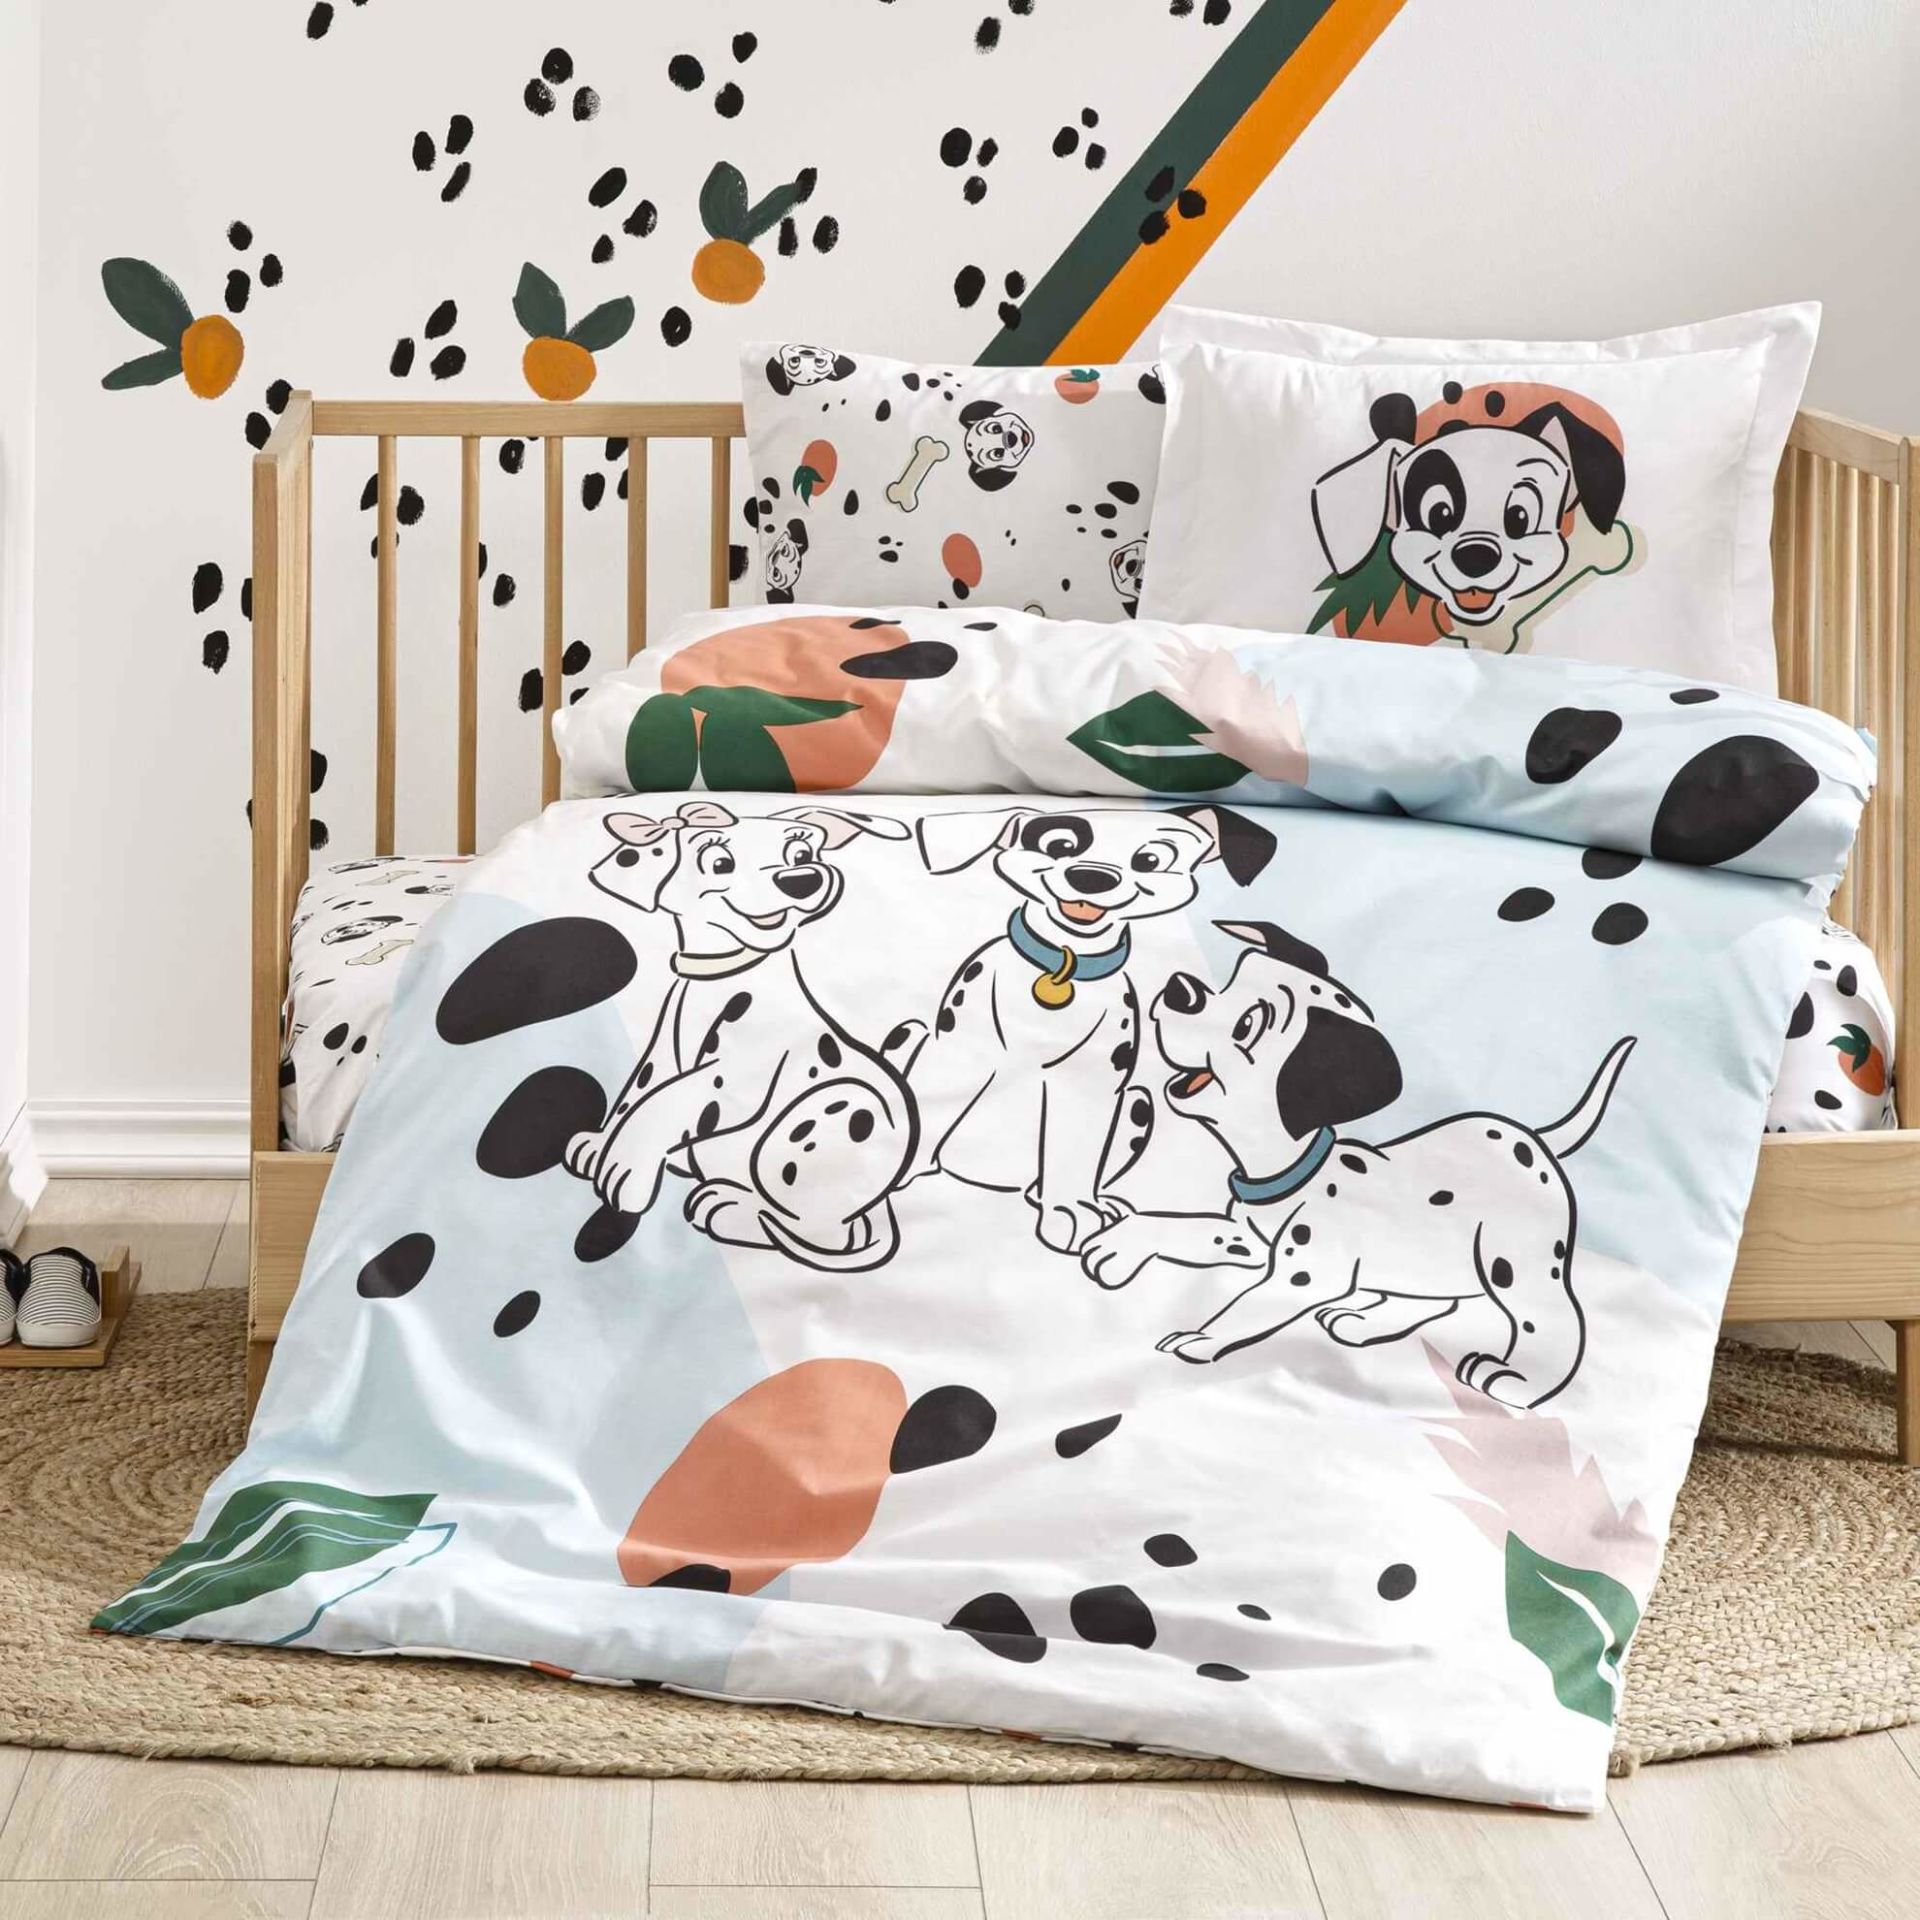 Taç Pamuk Bebe Nevresim Takımı Disney 101 Dalmatians Family